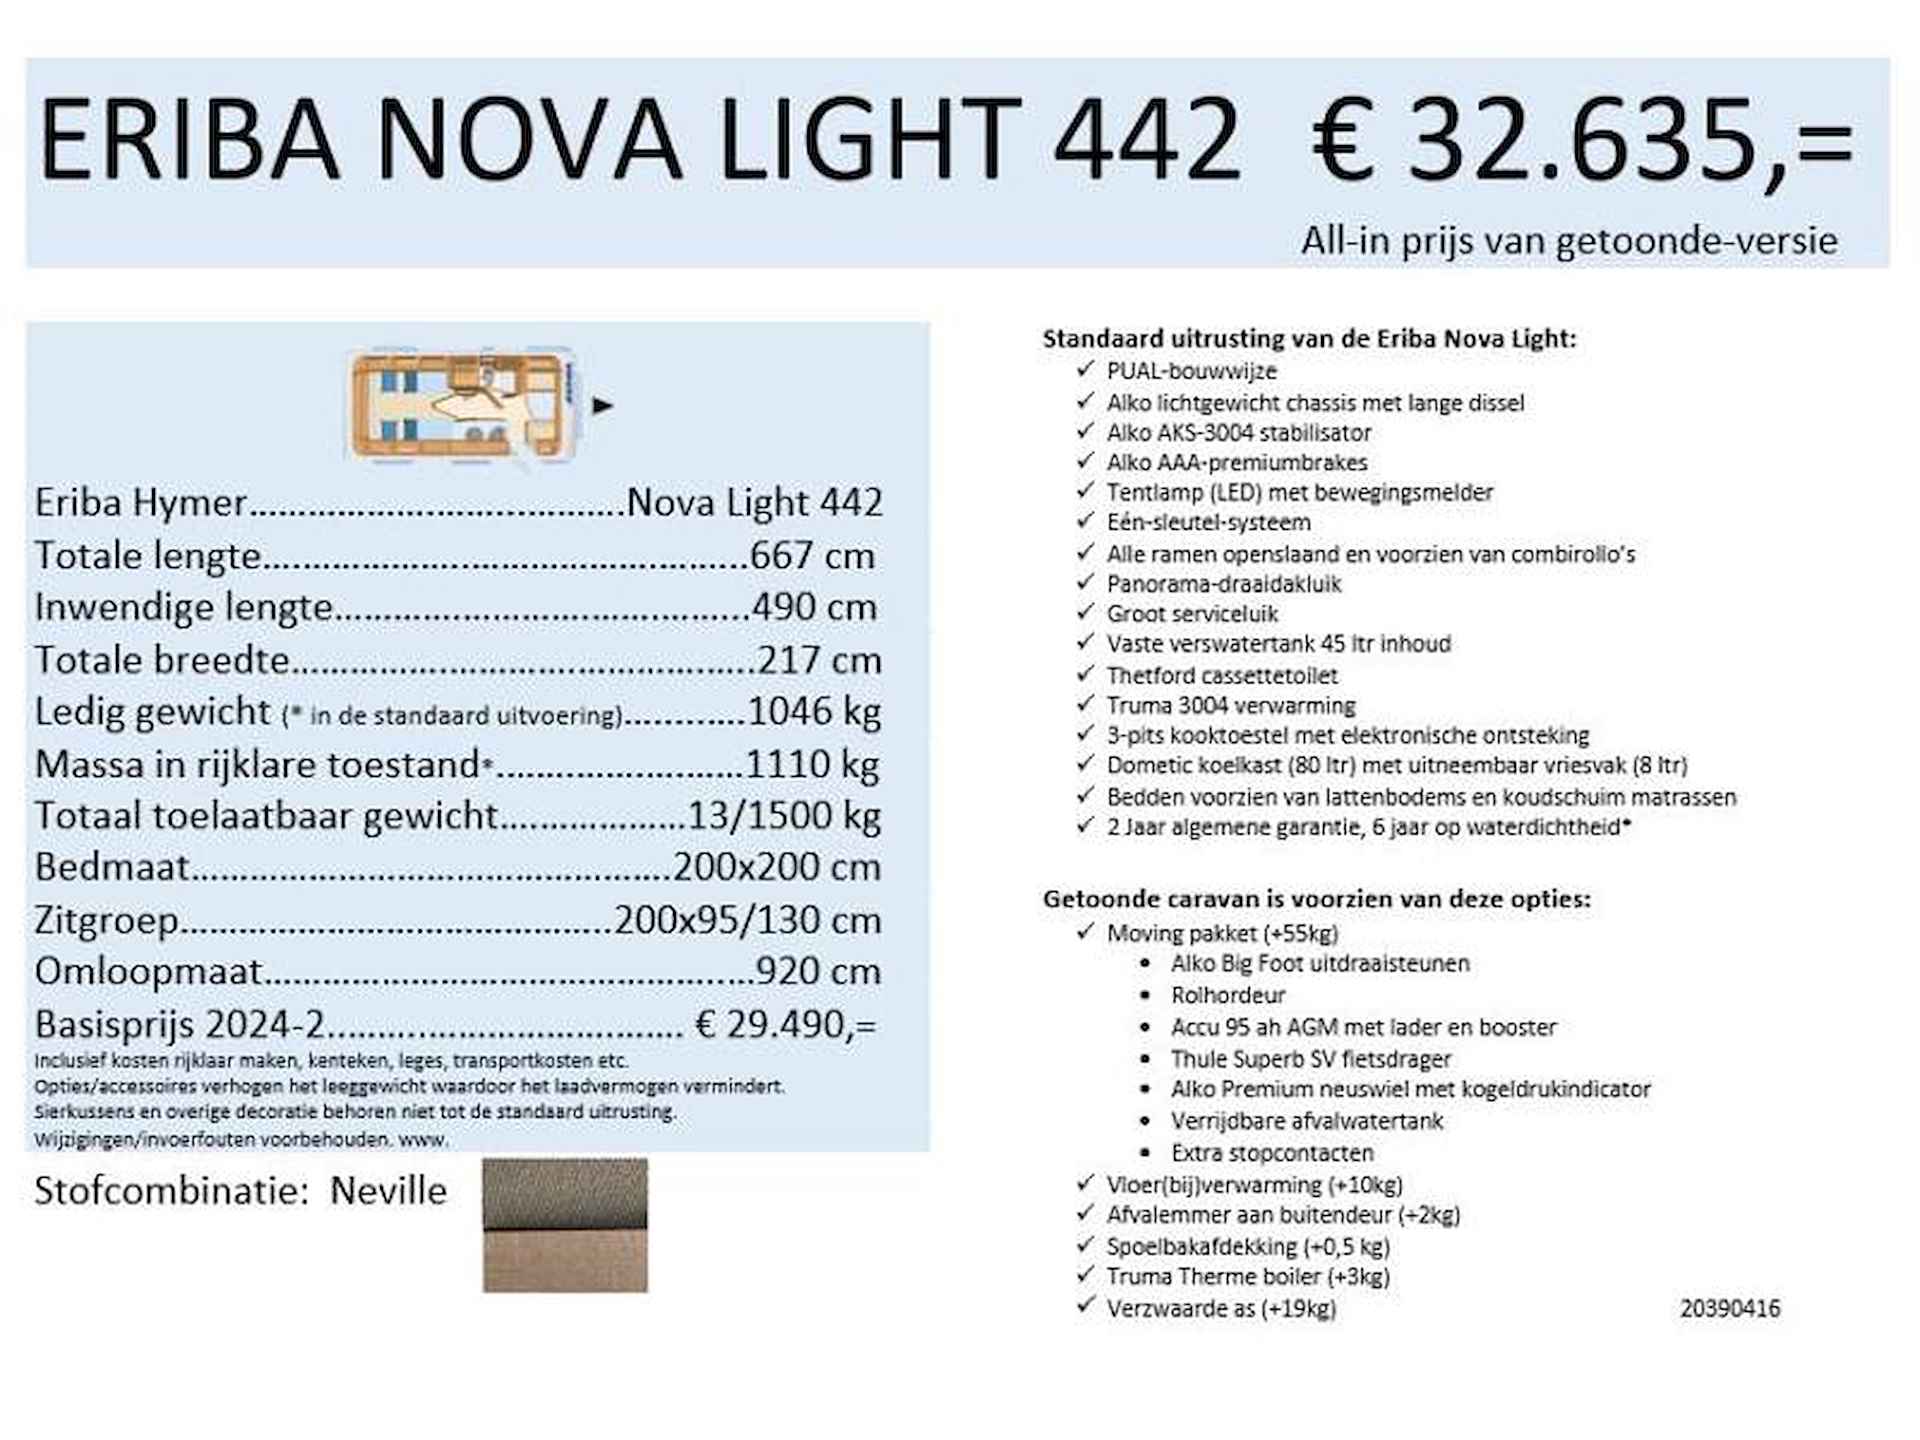 Eriba Nova Light 442 met V-bed - 20/20